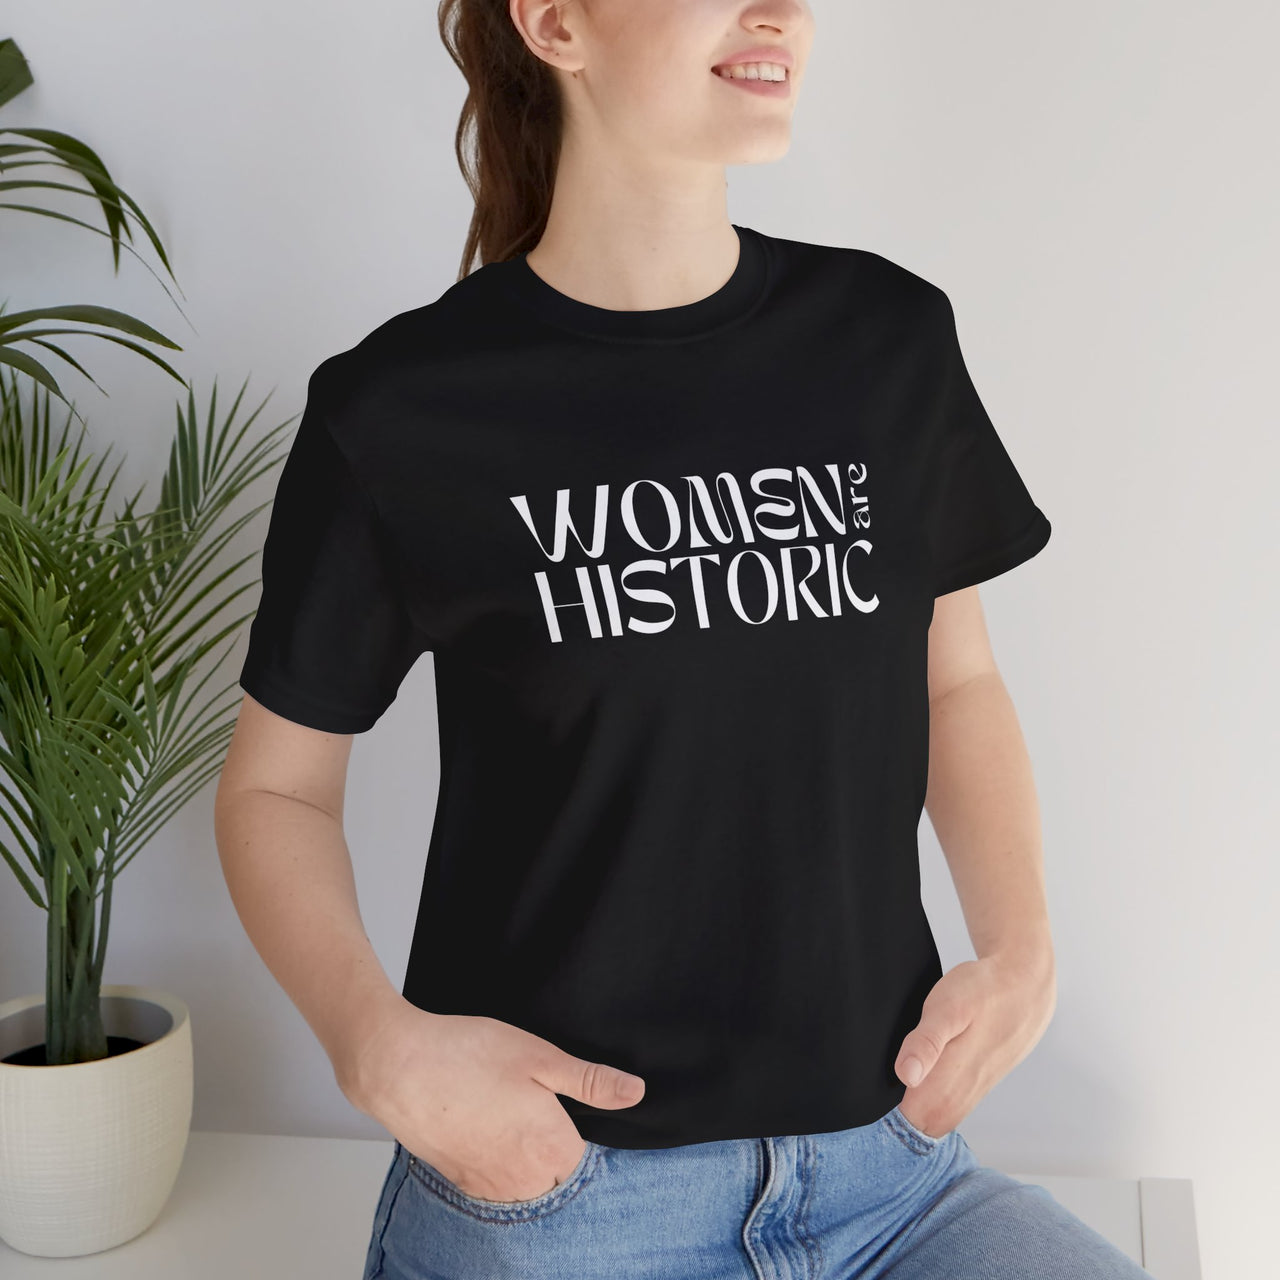 Women Are Historic Tee